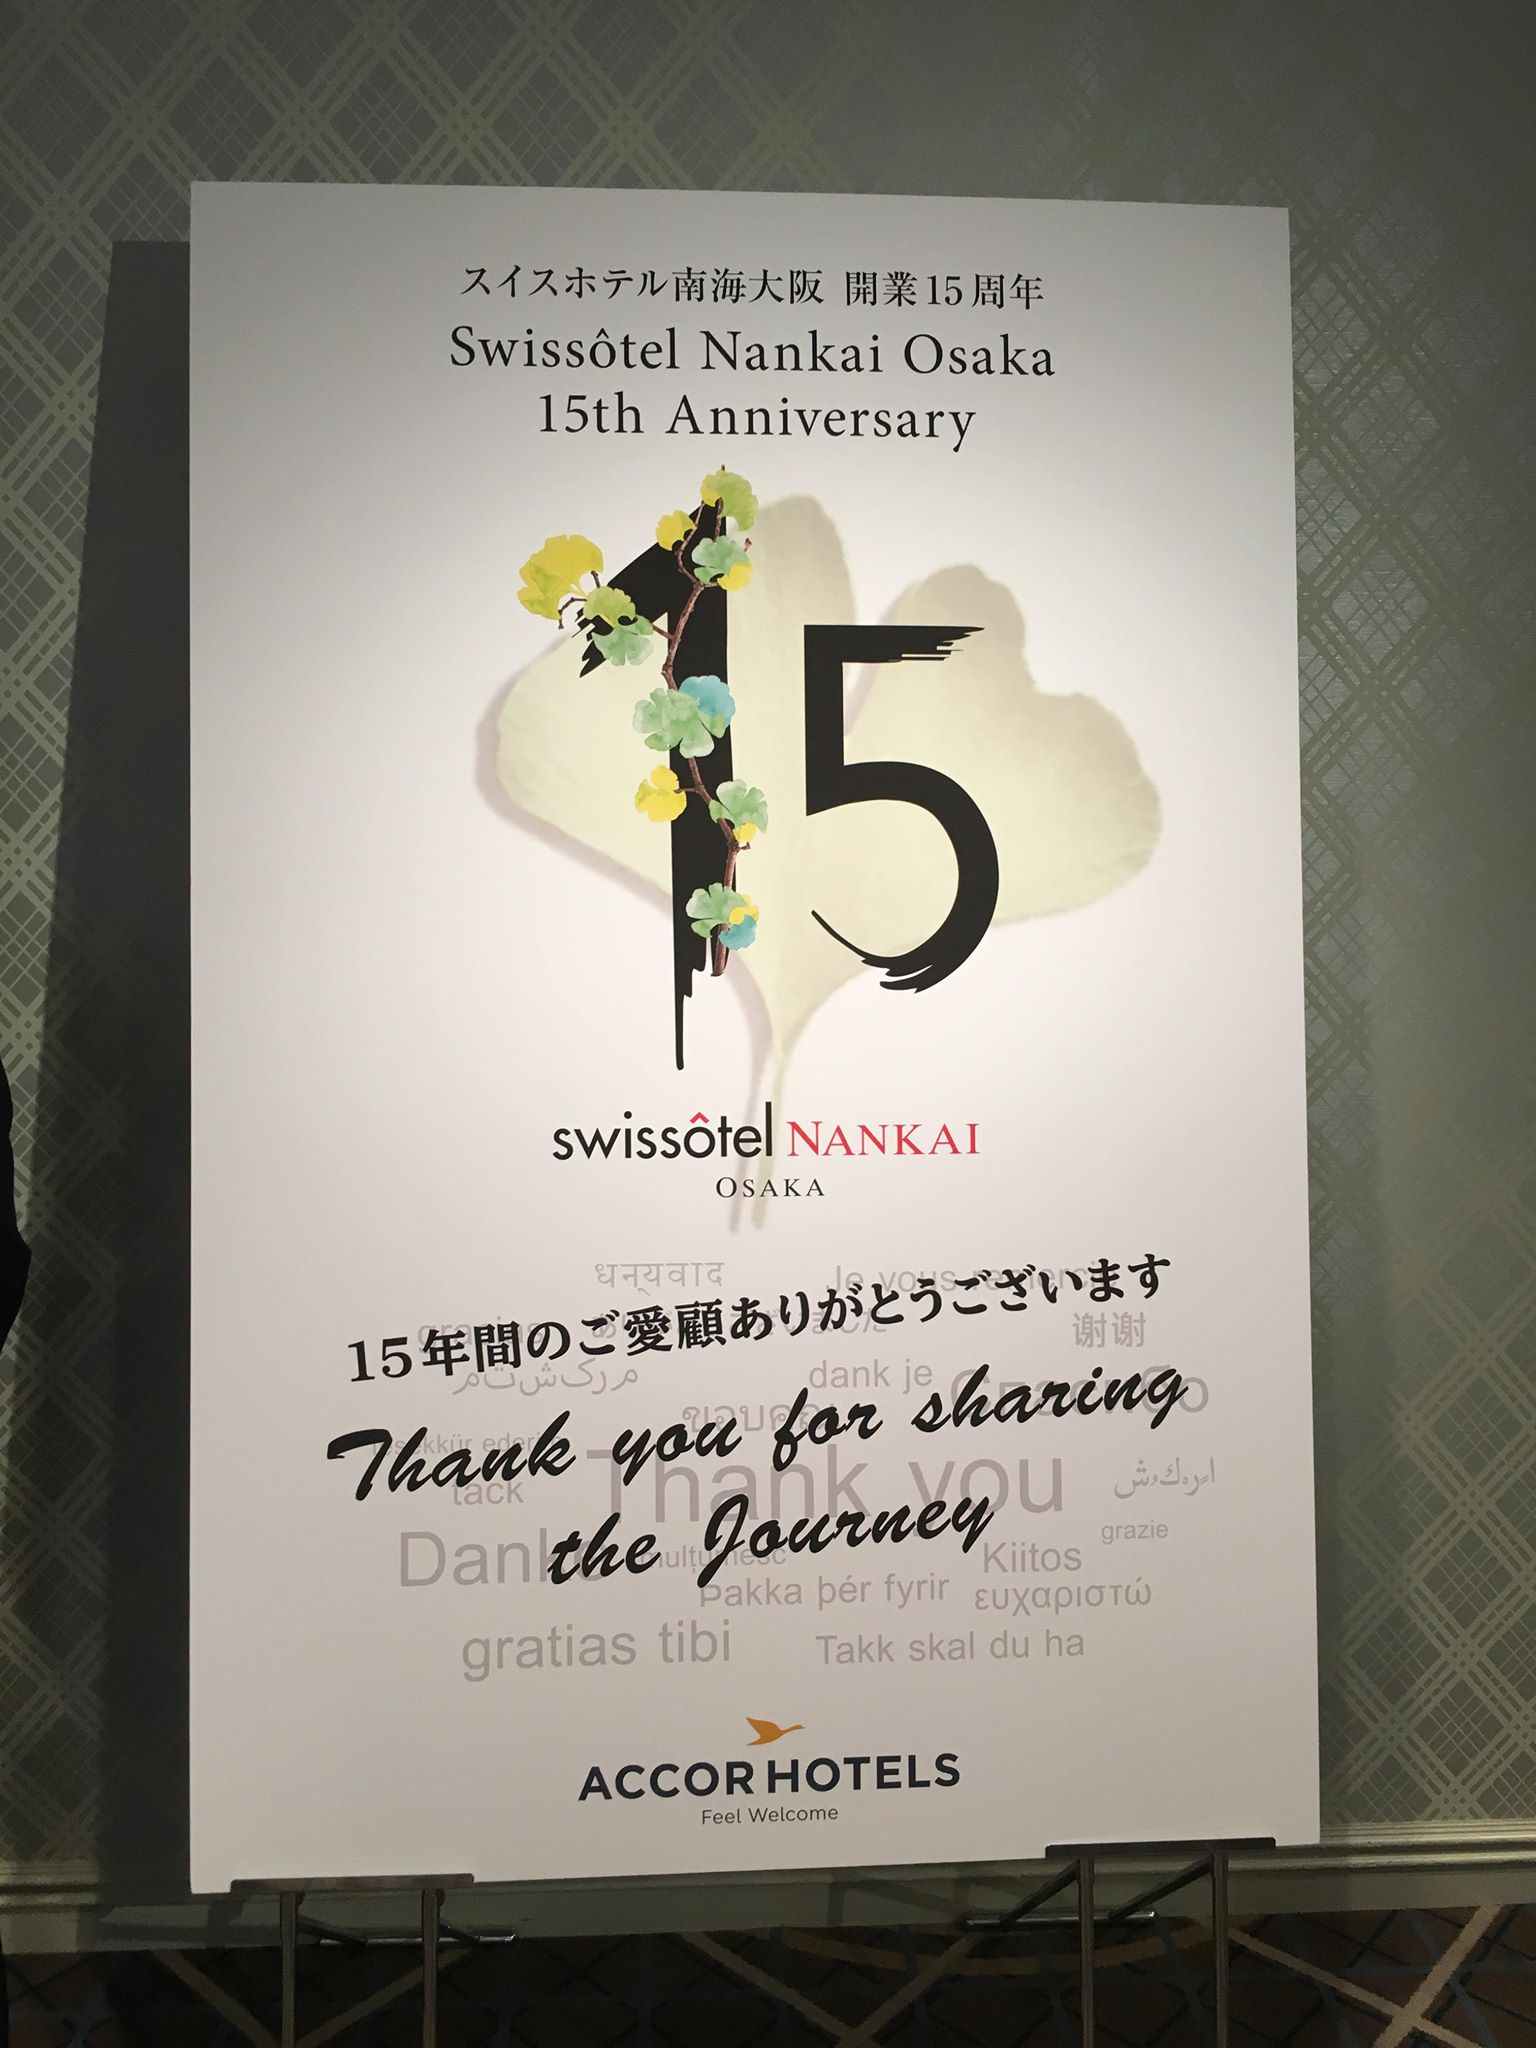 スイスホテル南海大阪15周年プロモーションの150万円プランがセレブ過ぎてヤバイ！